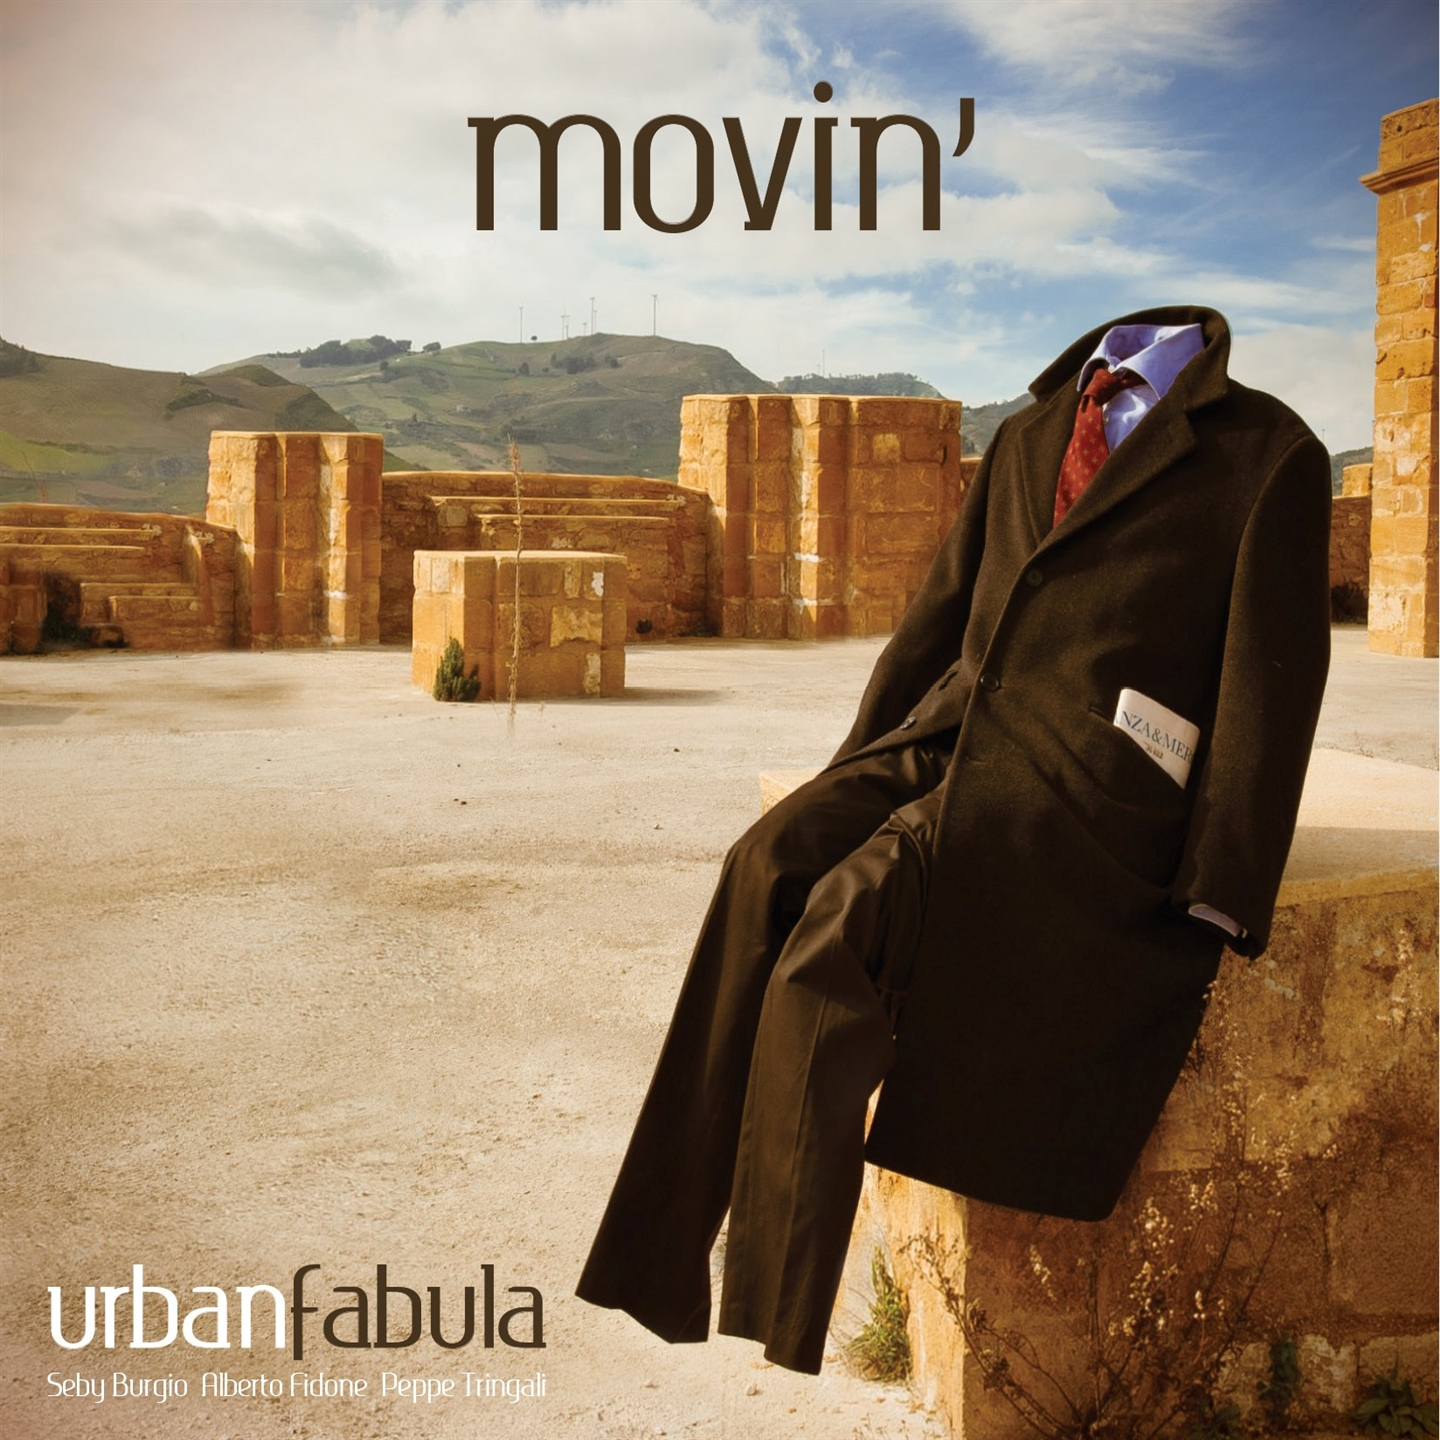 Urban Fabula - Movin' - Picture 1 of 1